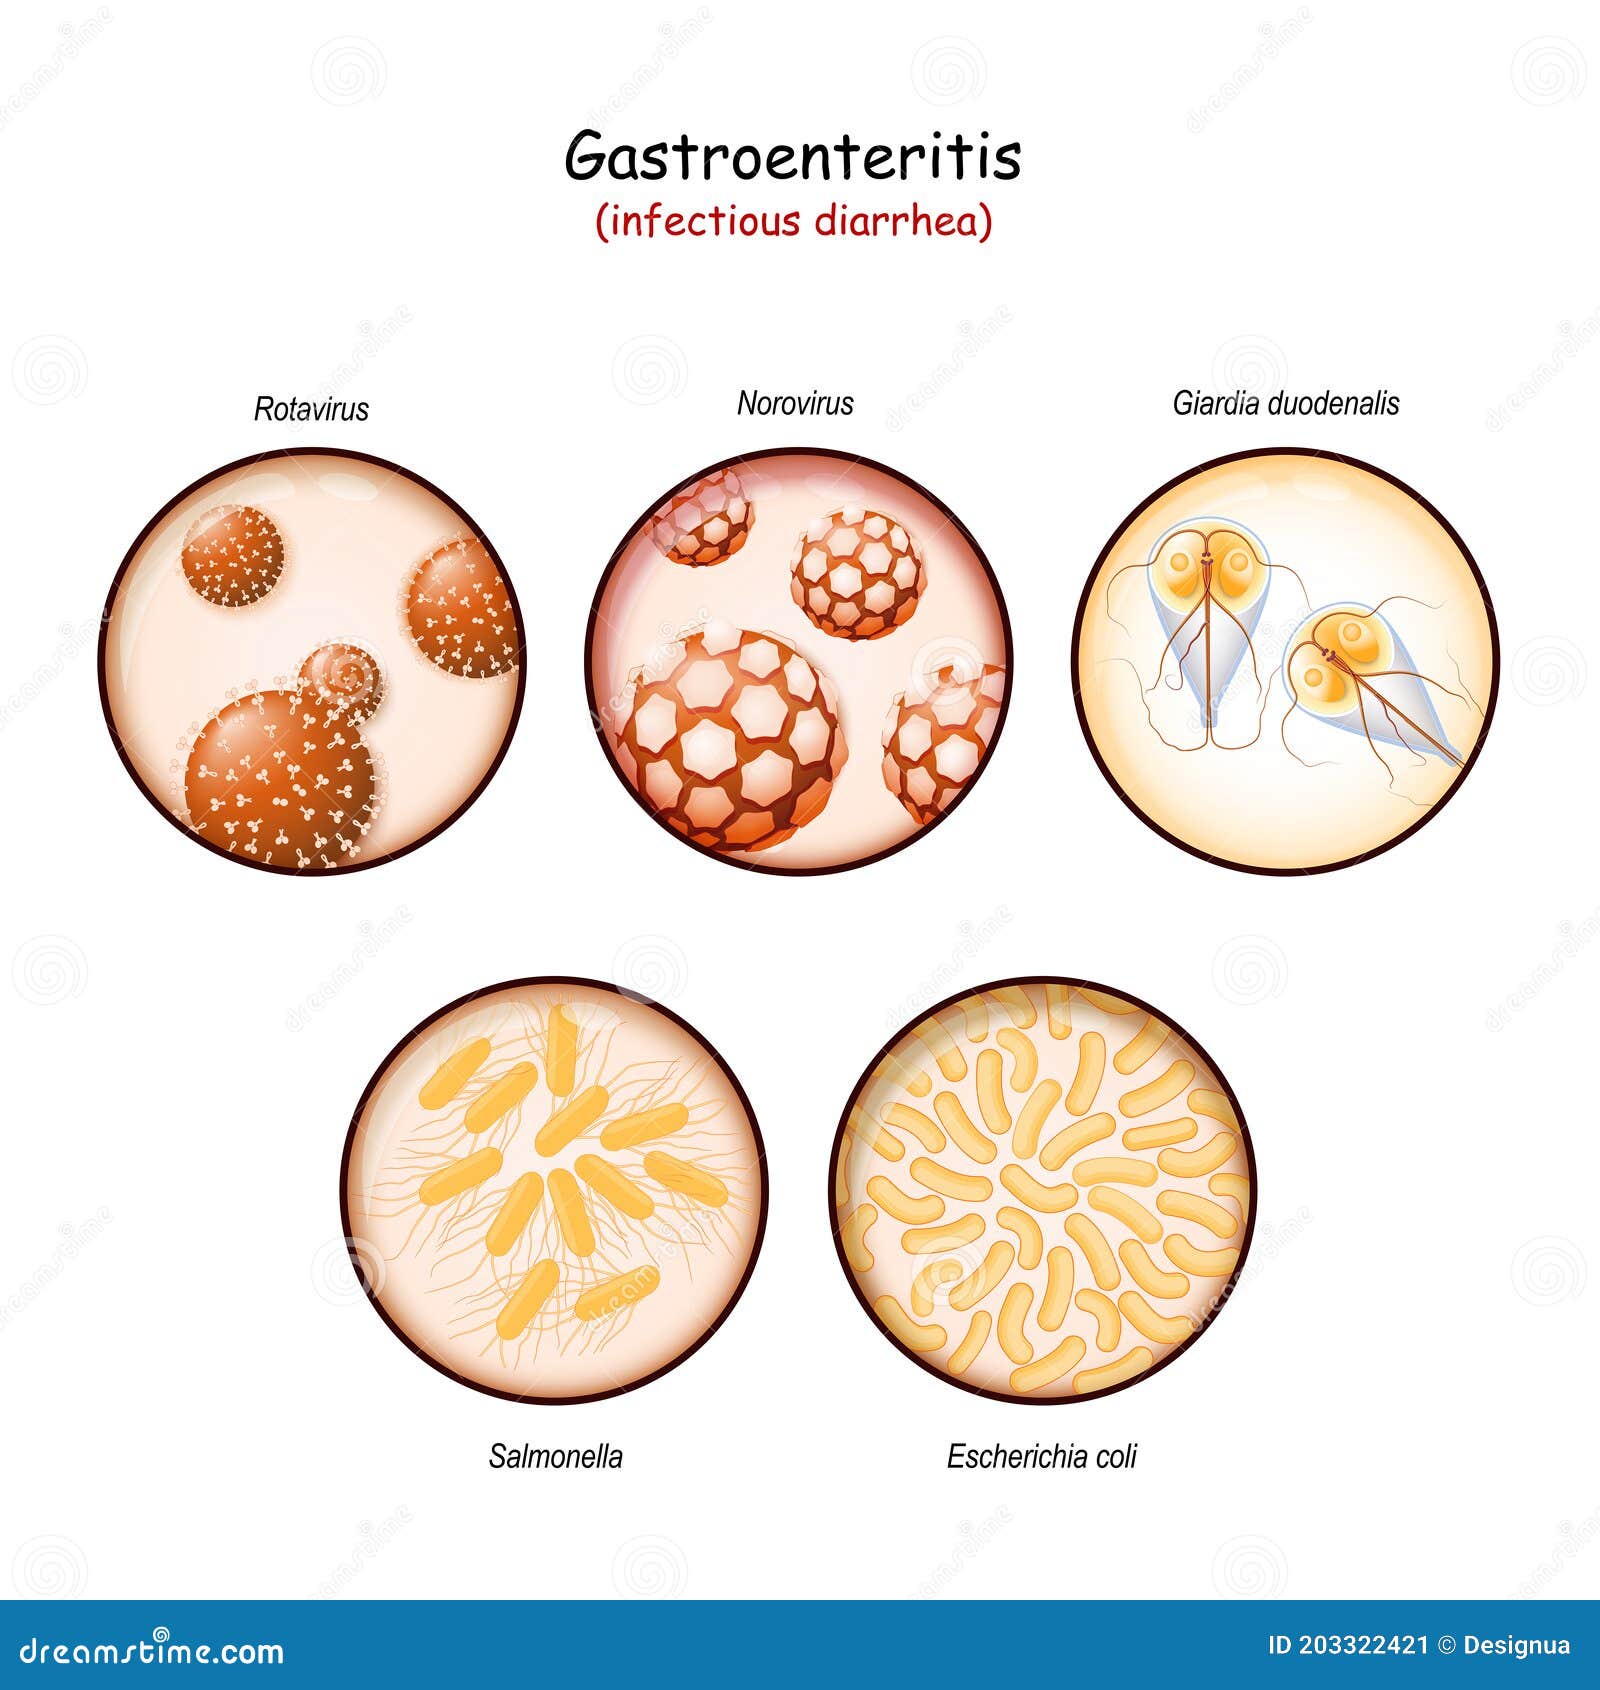 Giardiasis bacteria or virus